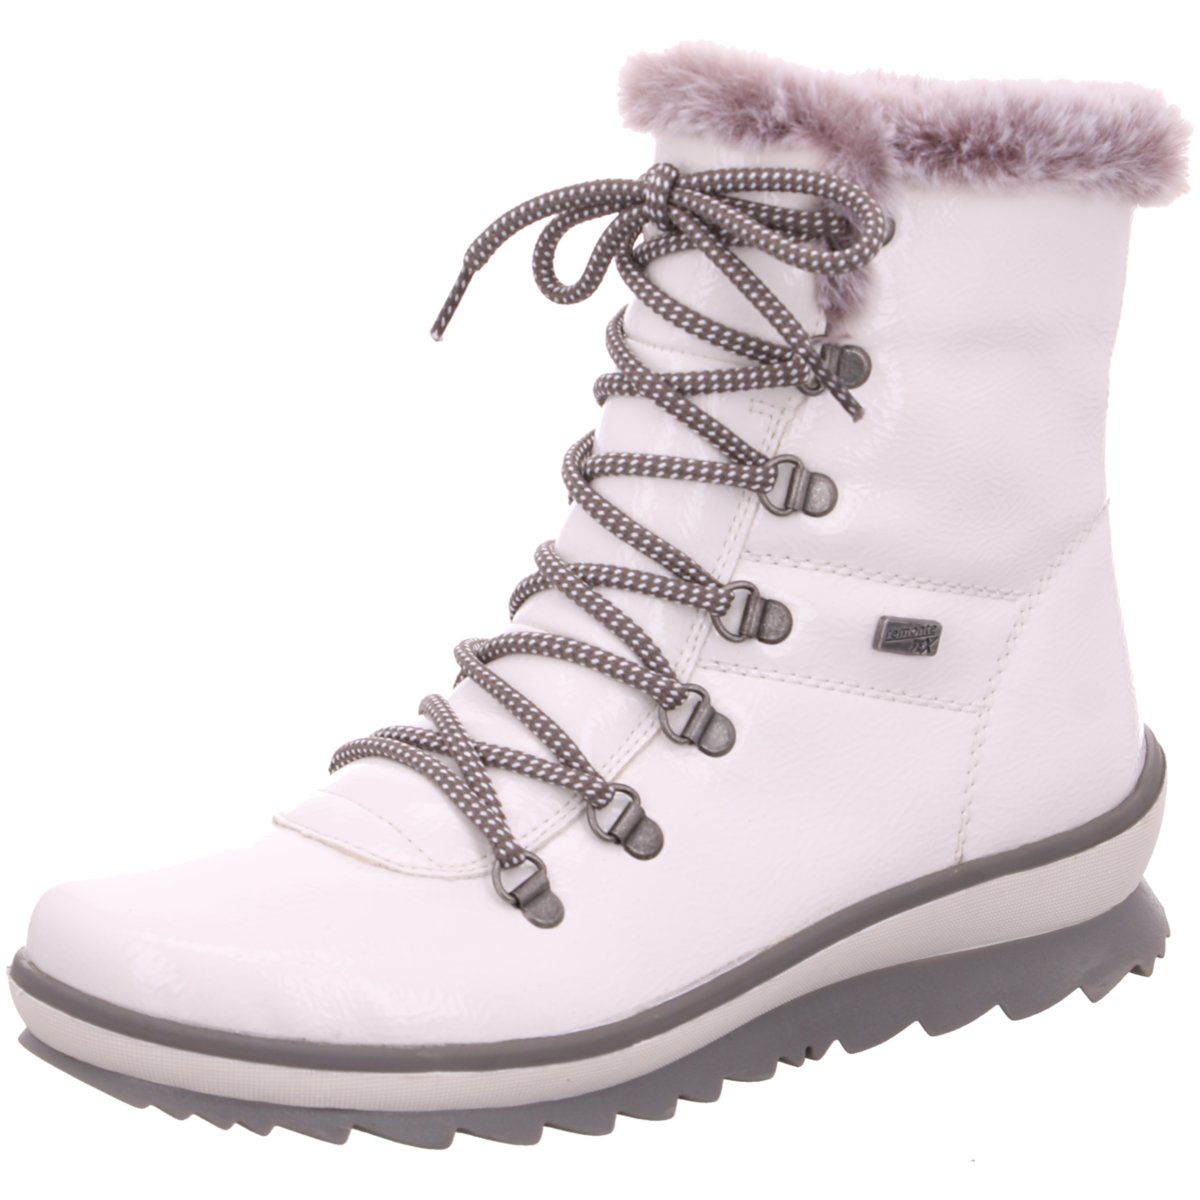 Damen Winter Boots Stiefel Snowboots warm gefüttert Weiß #LT989-2